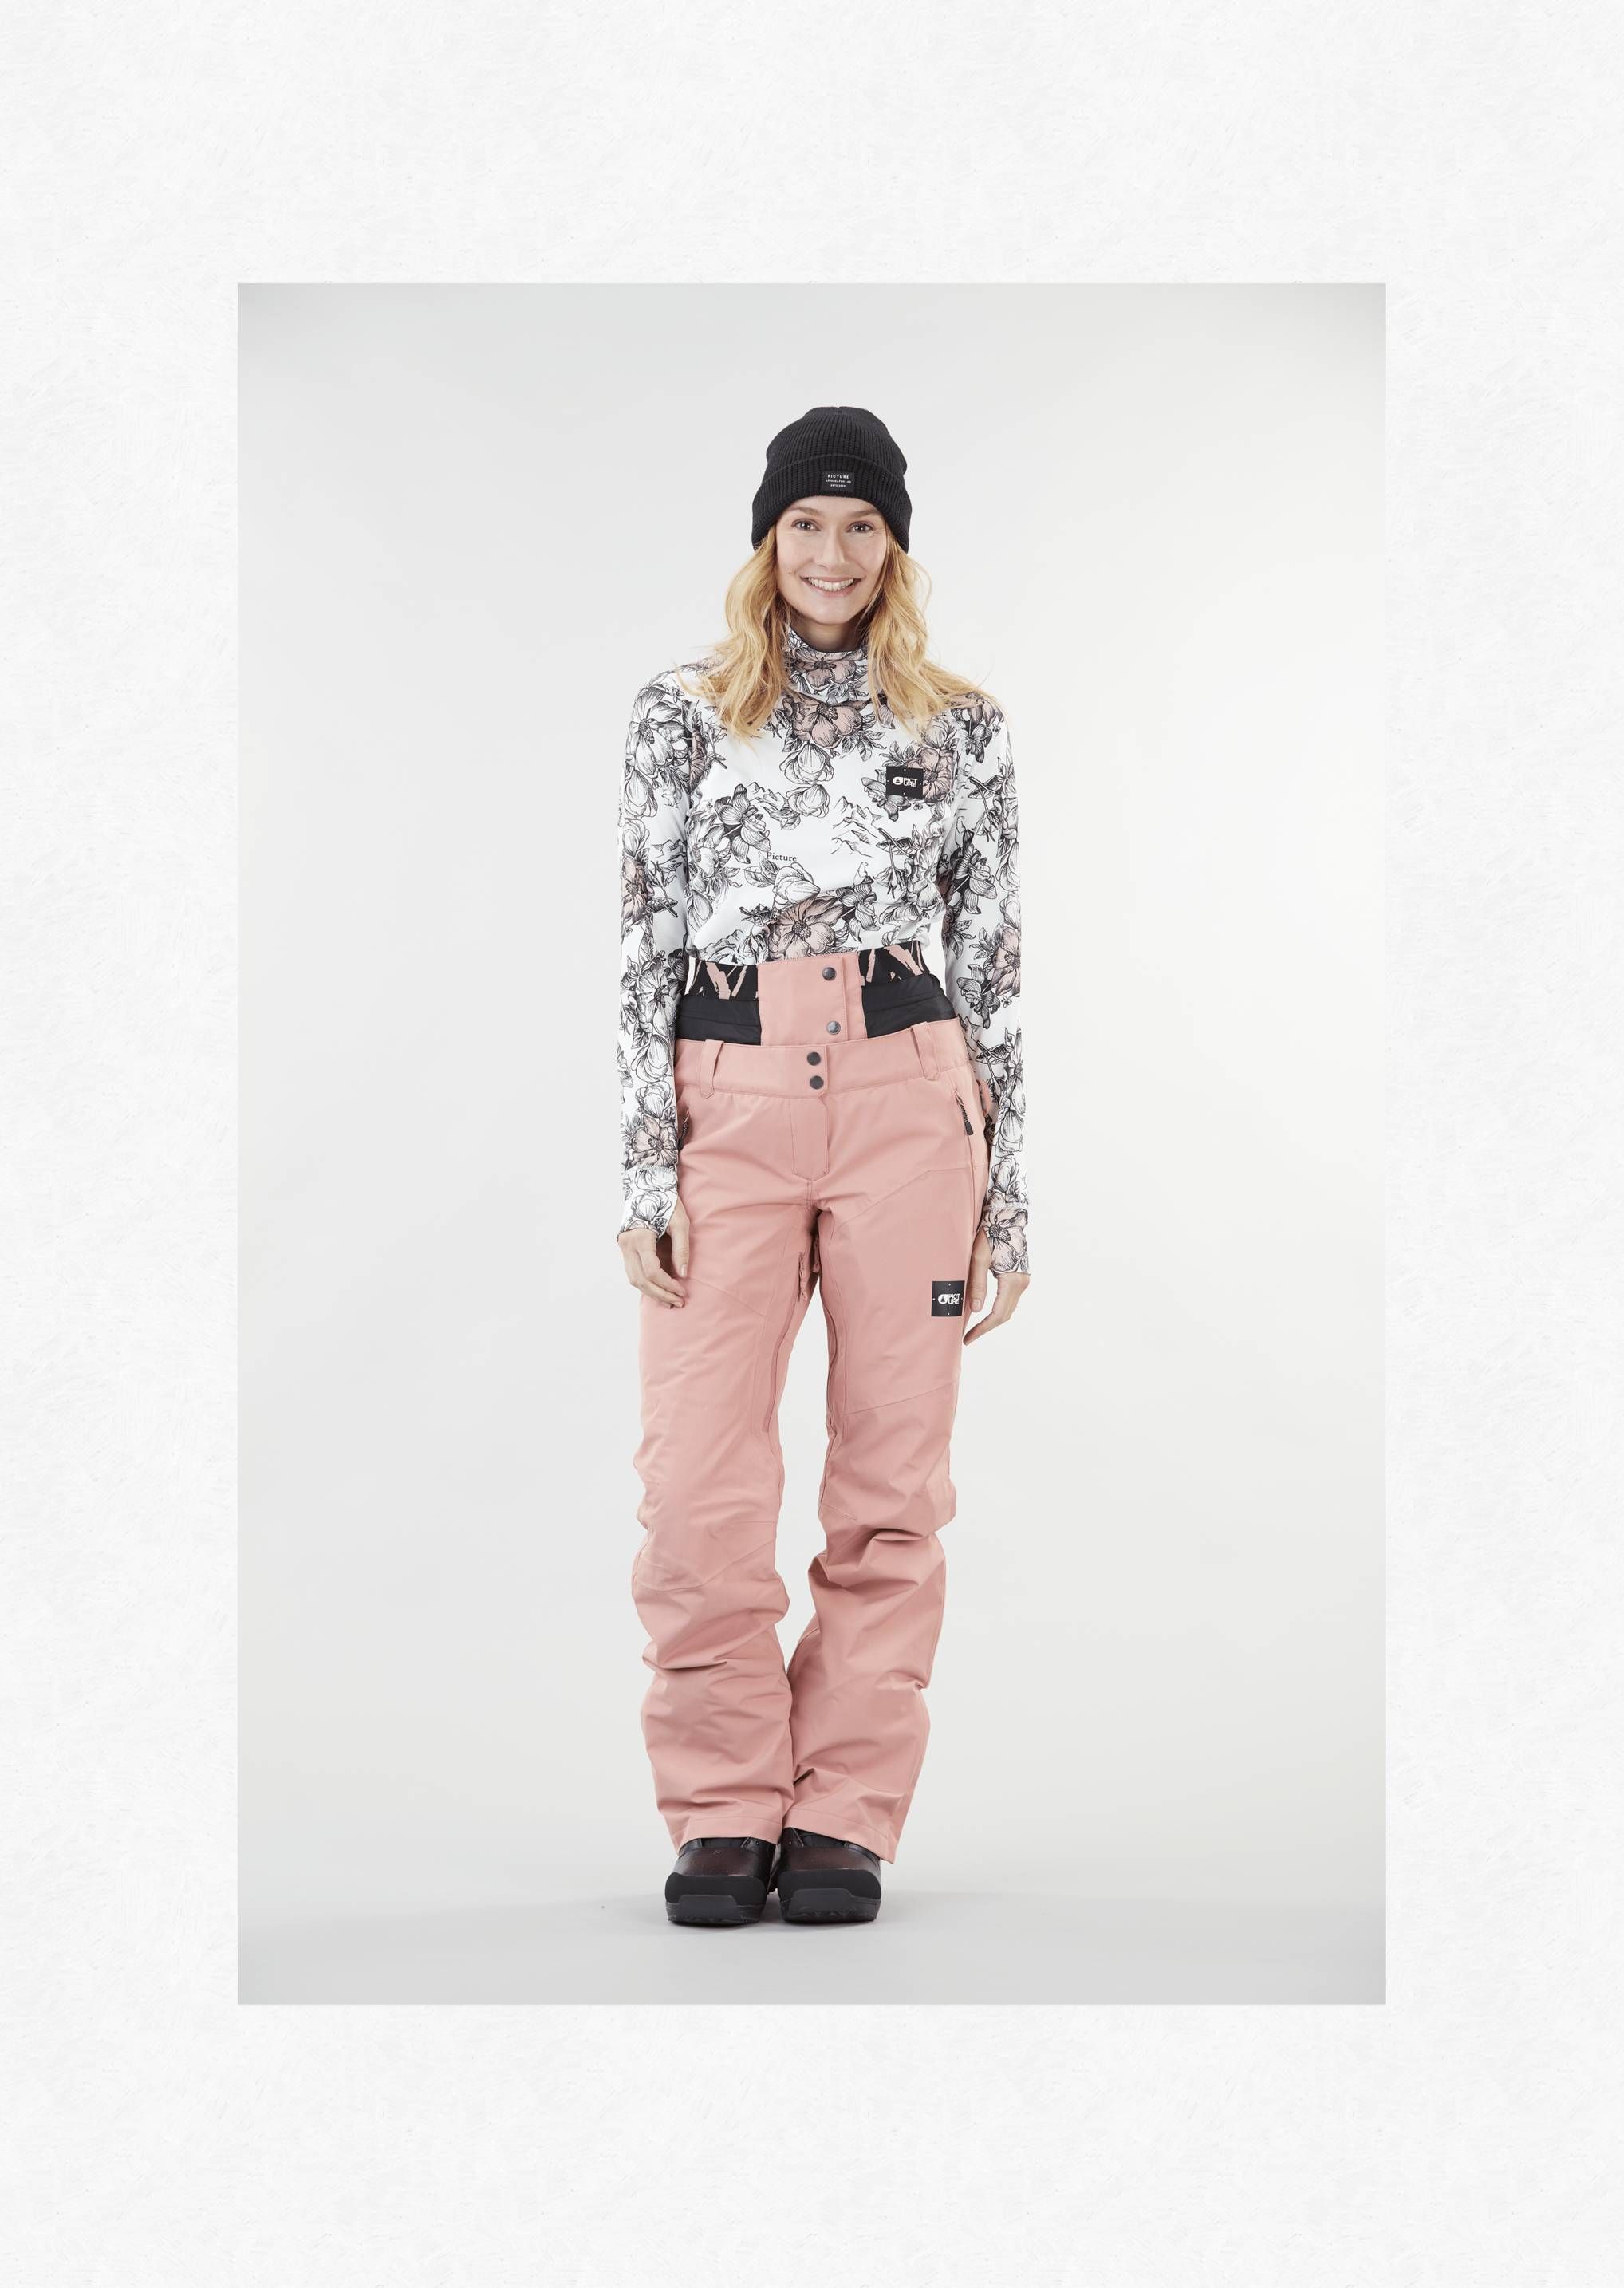 Pantalon de ski/snow Exa femmes - misty pink